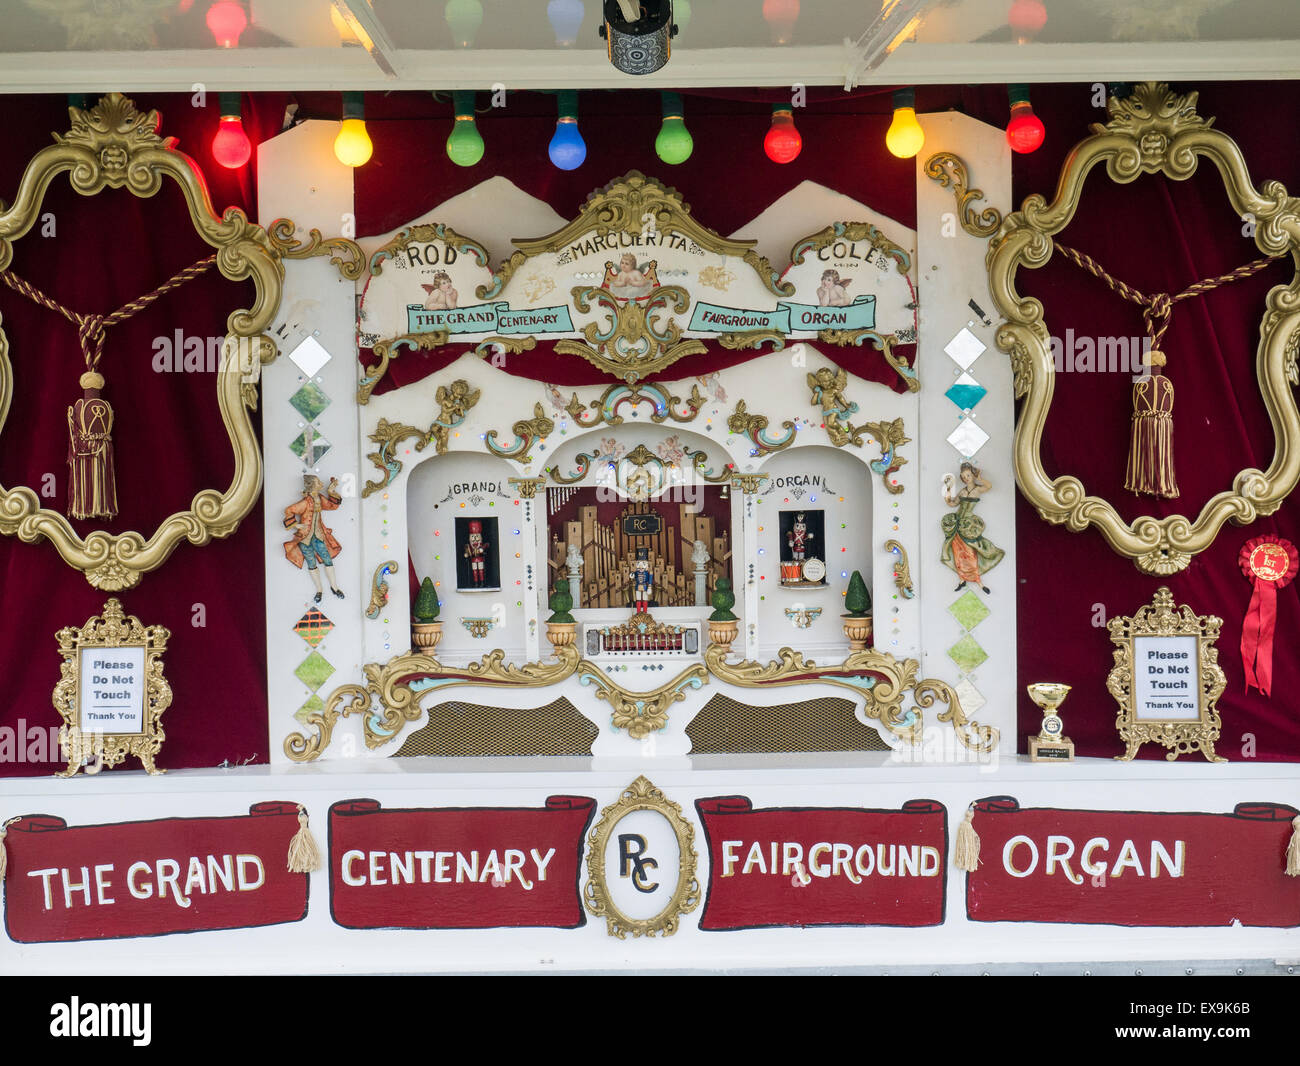 Vintage fairground organ Stock Photo